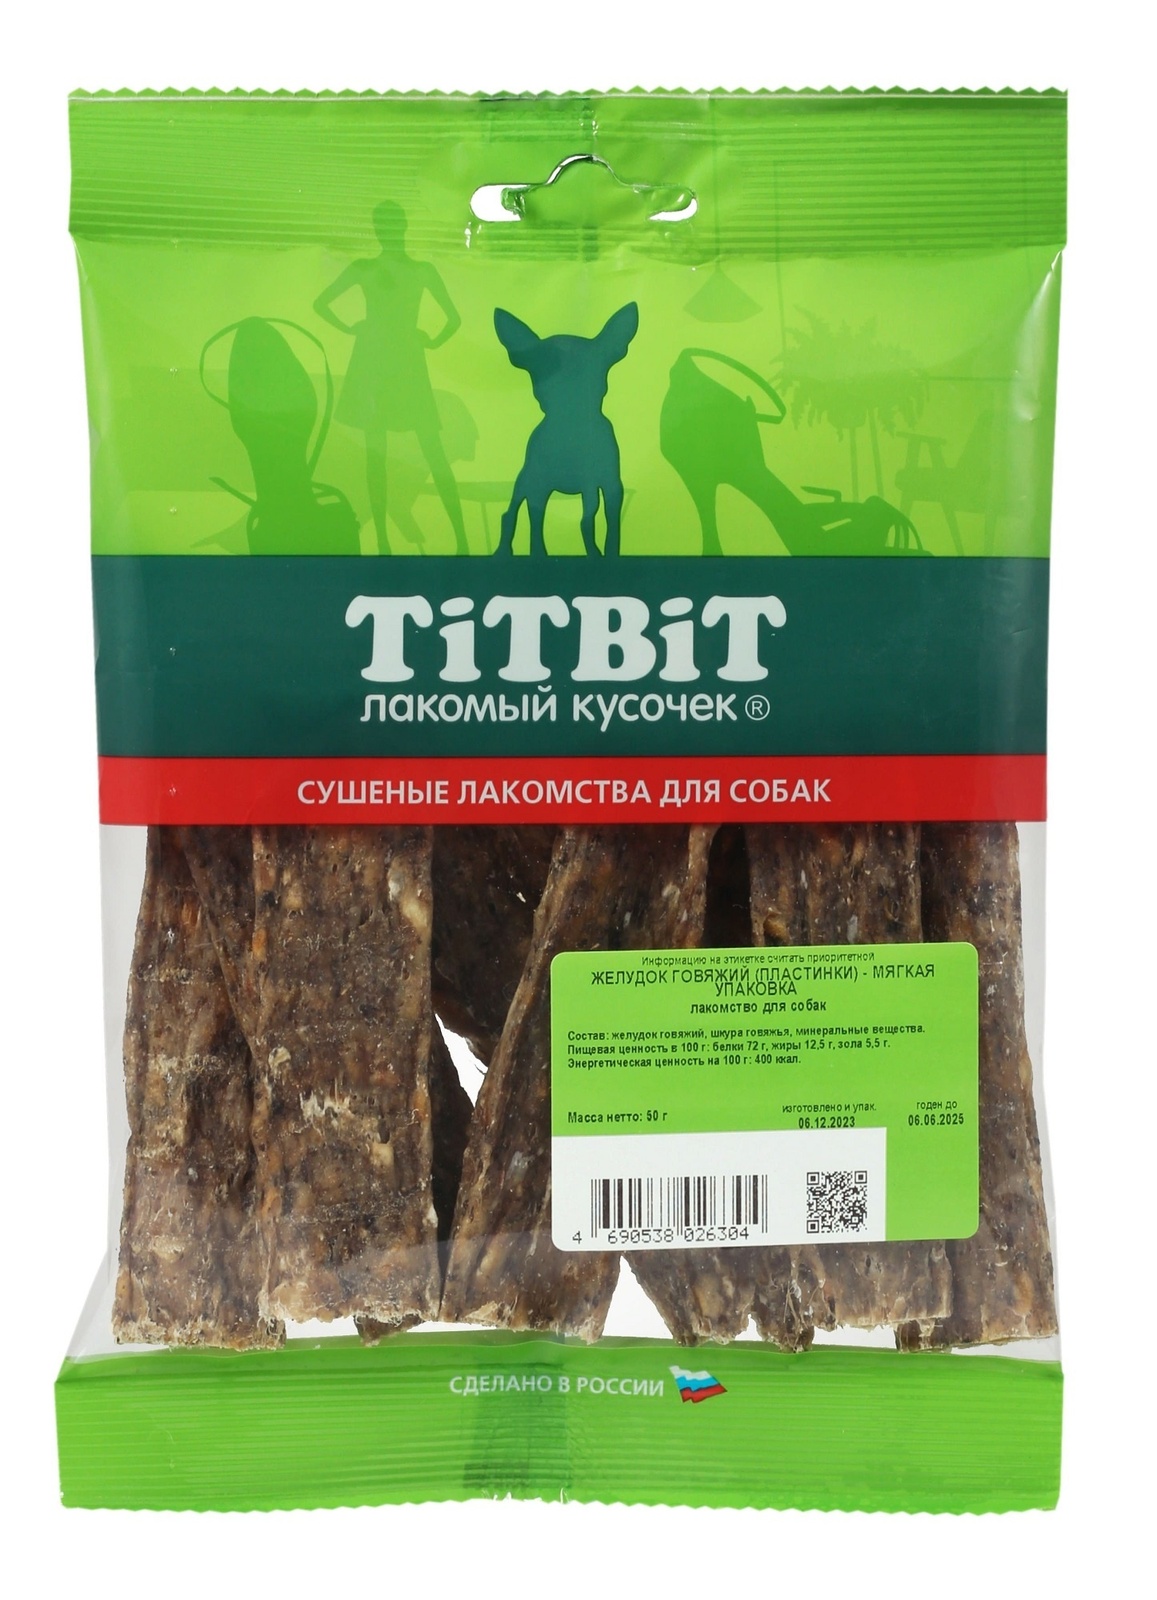 TiTBiT TiTBiT желудок говяжий (пластинки) - мягкая упаковка (50 г) цена и фото